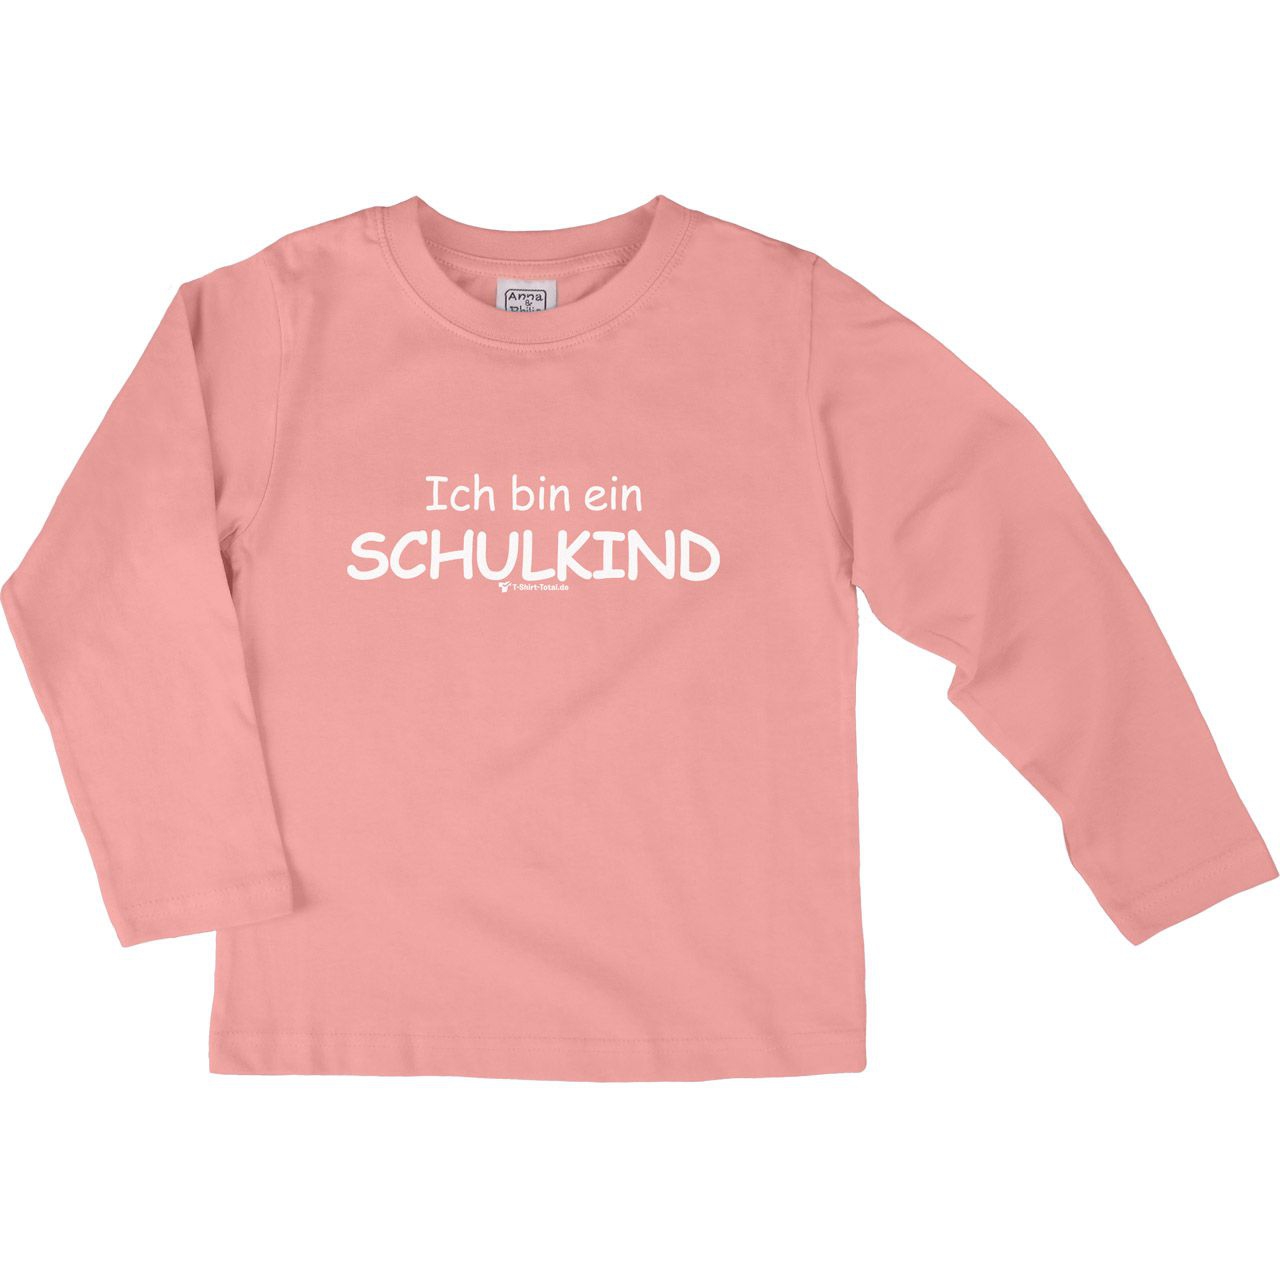 Ich bin ein Schulkind Kinder Langarm Shirt rosa 122 / 128